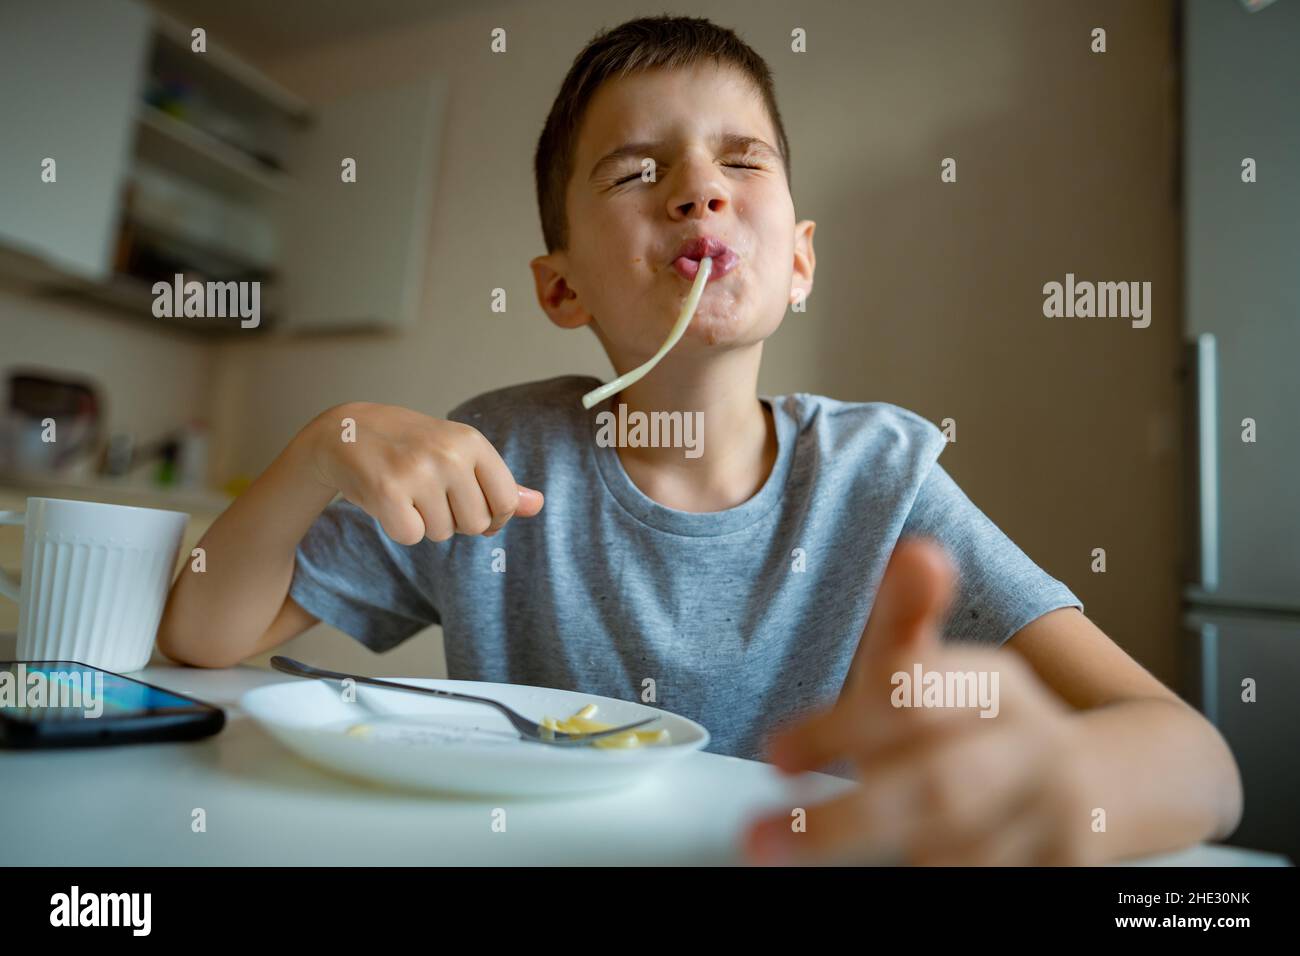 Junge, Kind, das Makkaroni isst, ziehen lange Pasta in den Mund Stockfoto